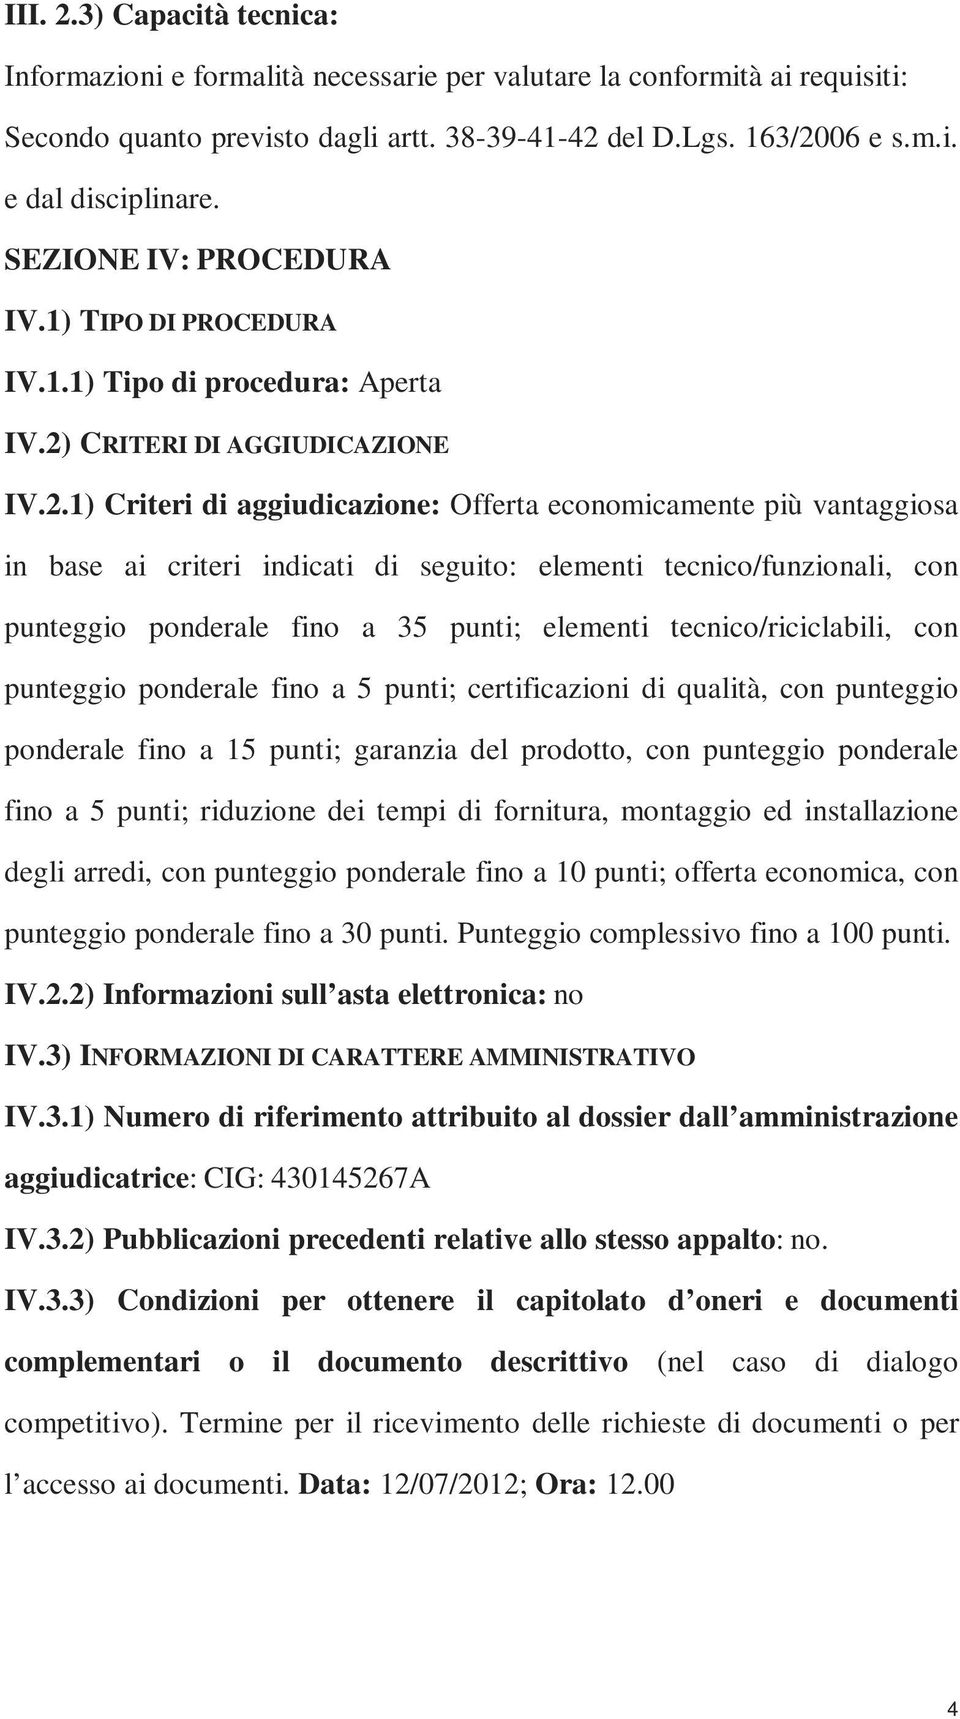 CRITERI DI AGGIUDICAZIONE IV.2.